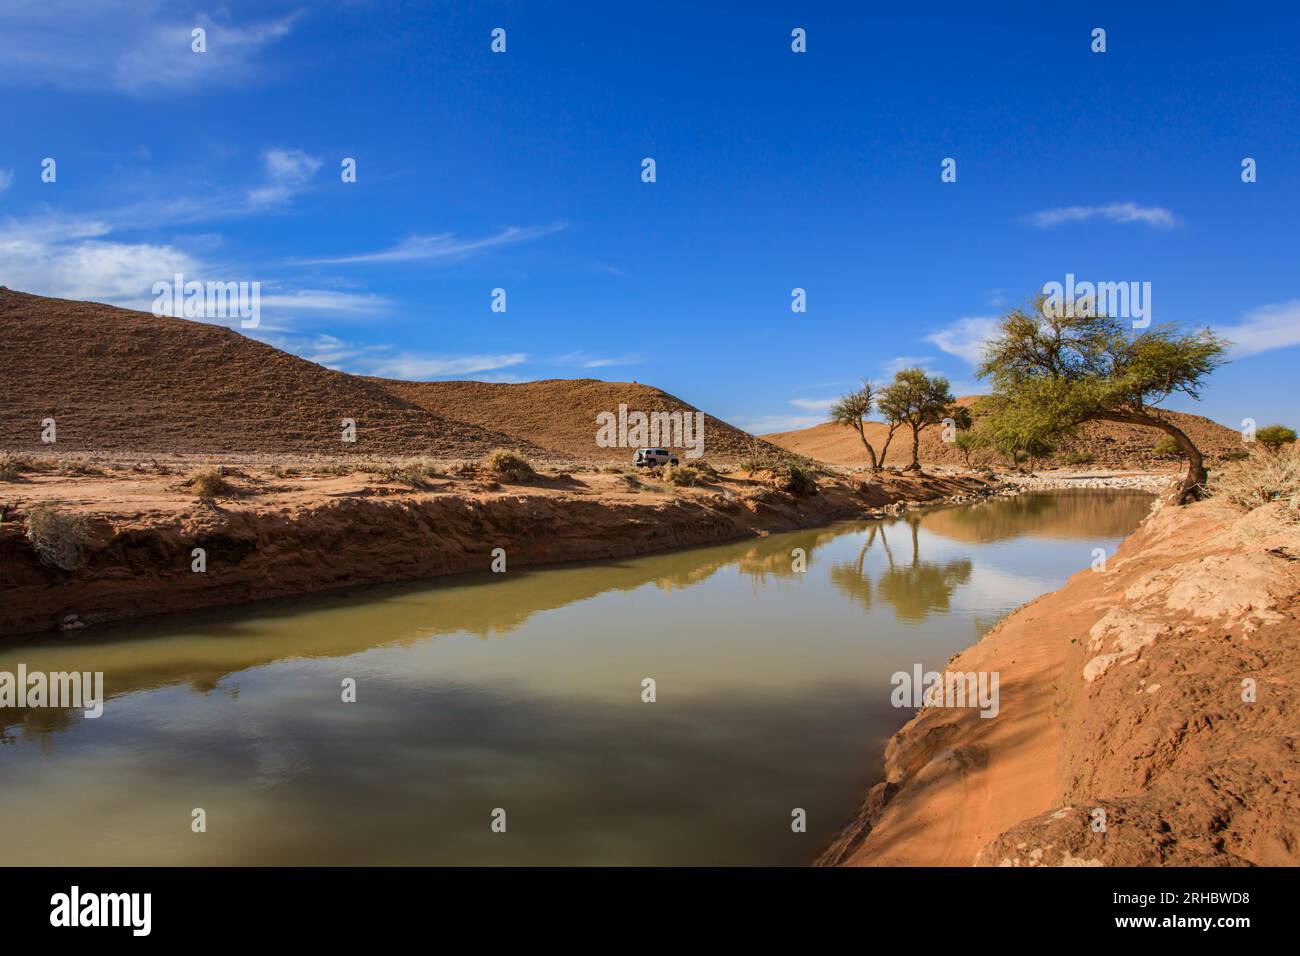 Vallée inondée dans le paysage désertique, Arabie Saoudite Banque D'Images